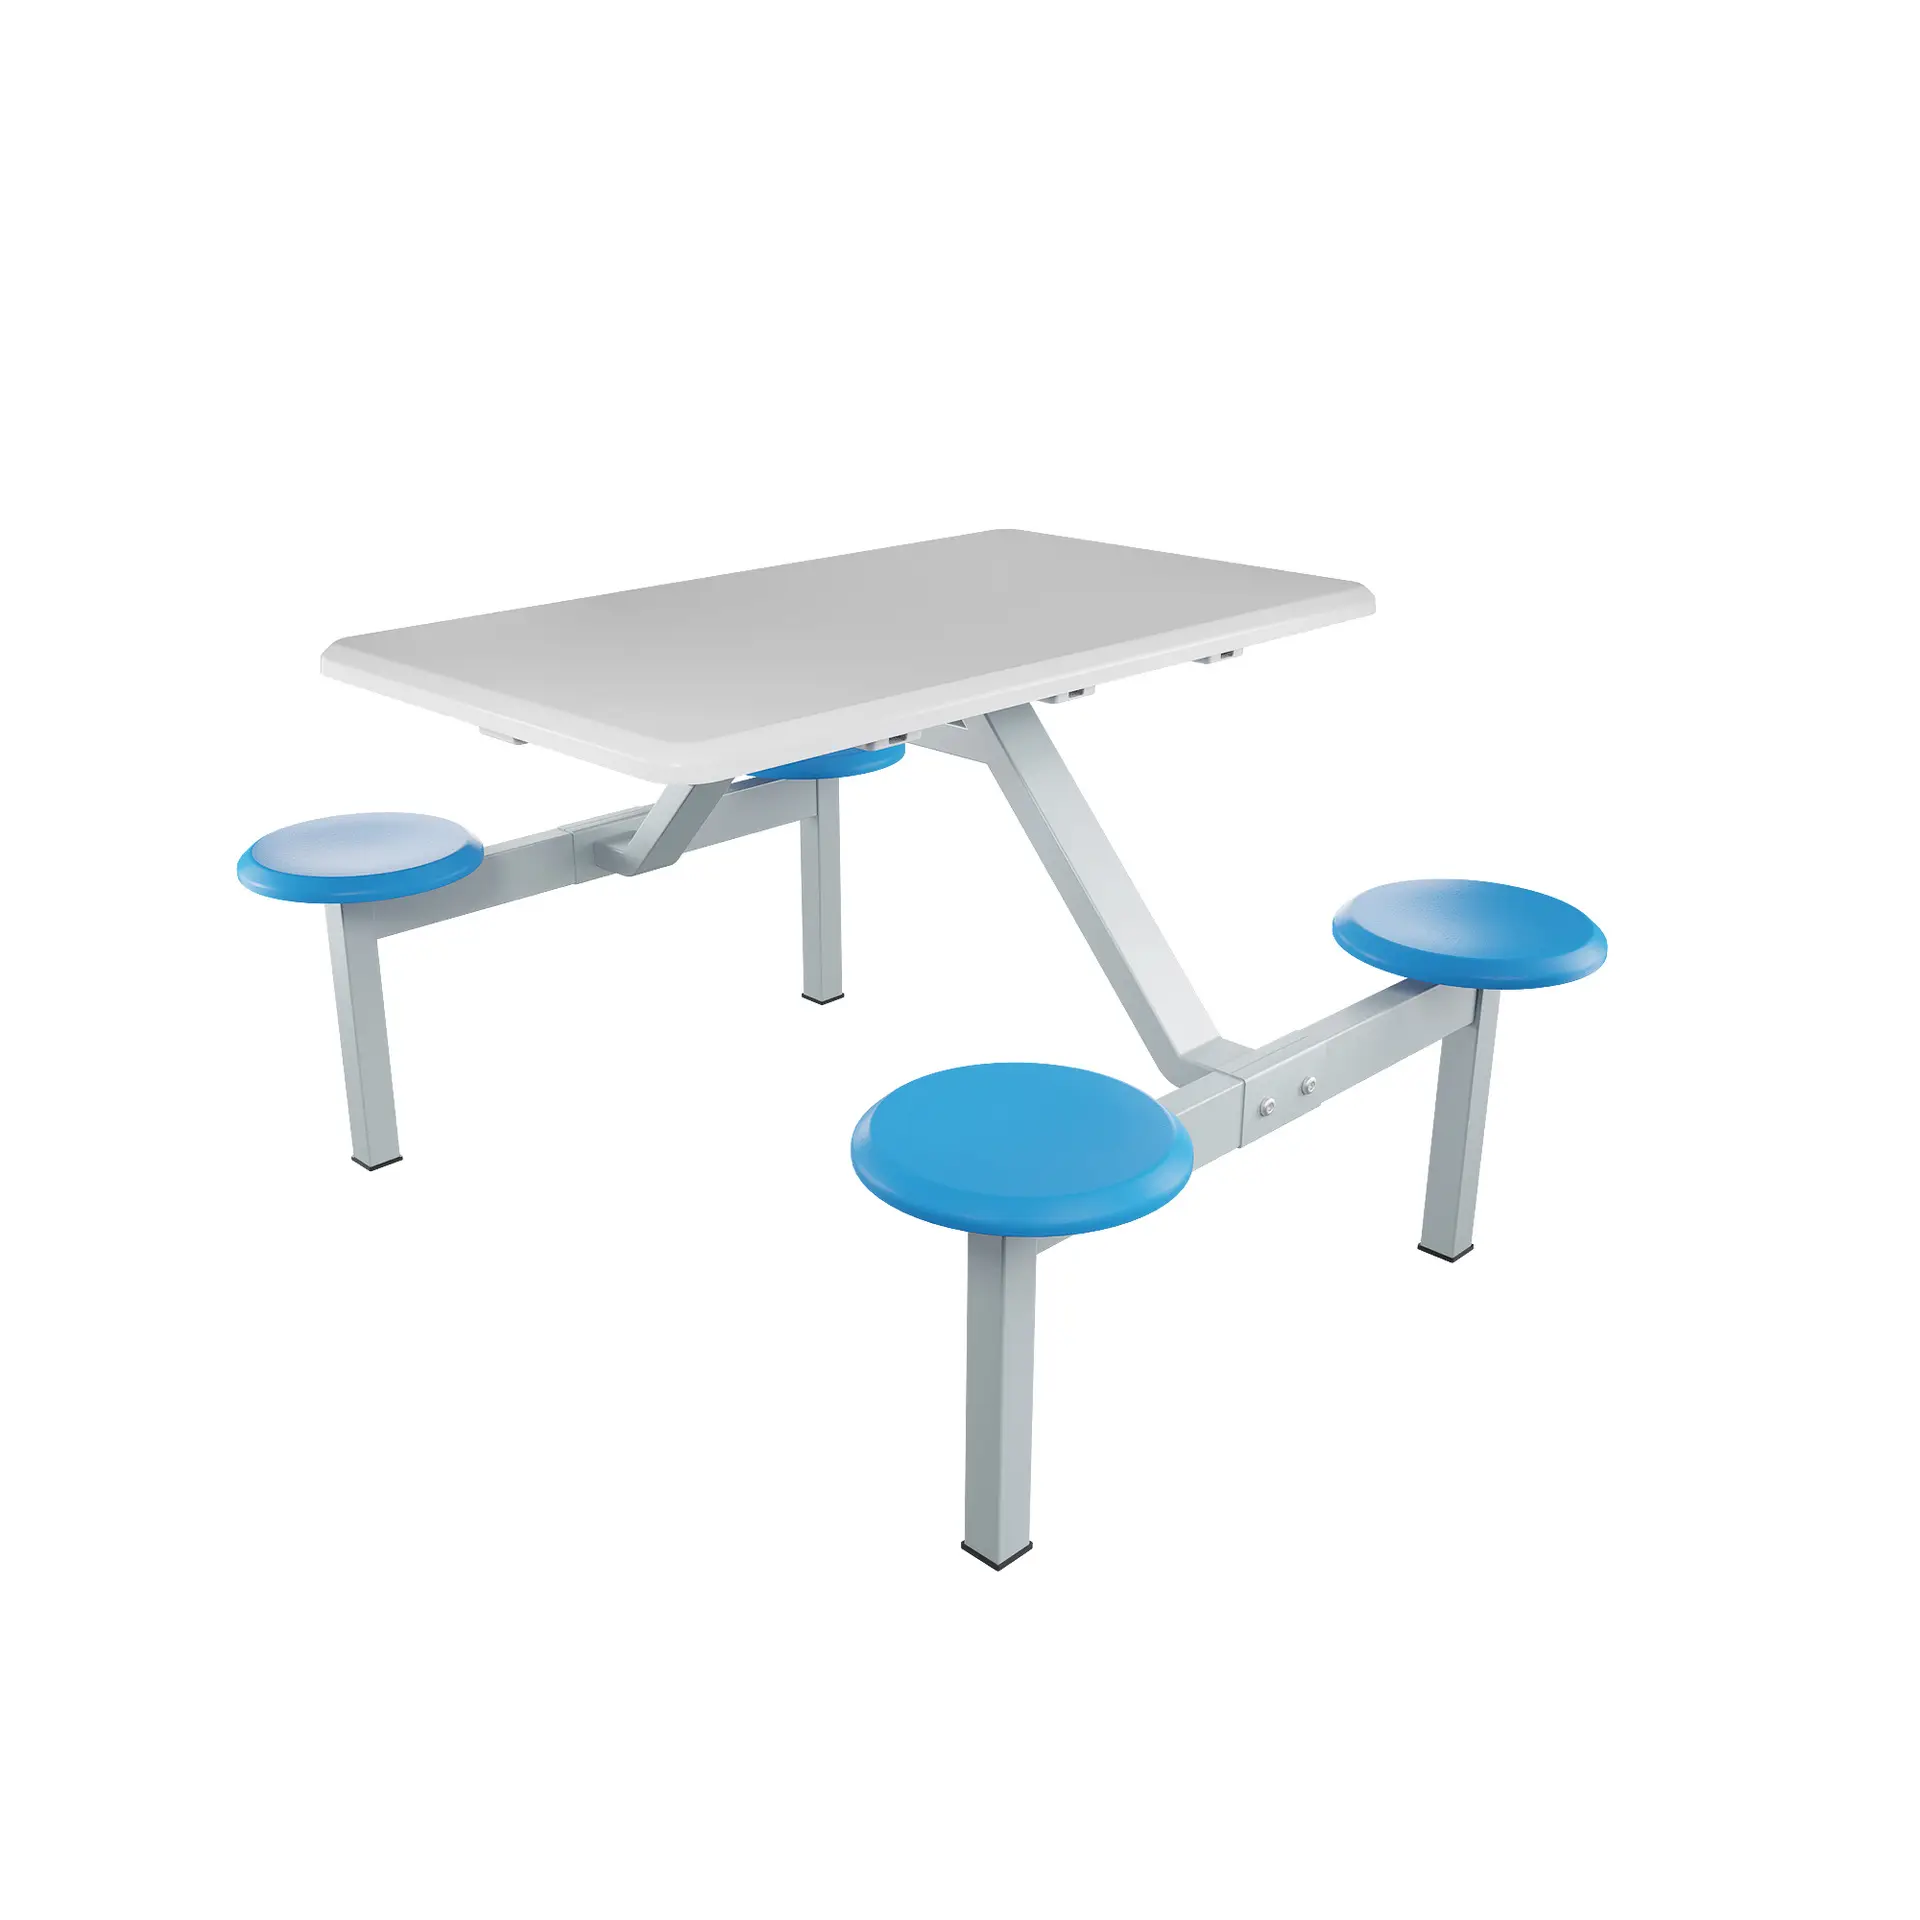 Commercio all'ingrosso mensa mobili ristorante tavolo da pranzo e sedia tavolo da pranzo allungabile ristorante mobili utilizzati